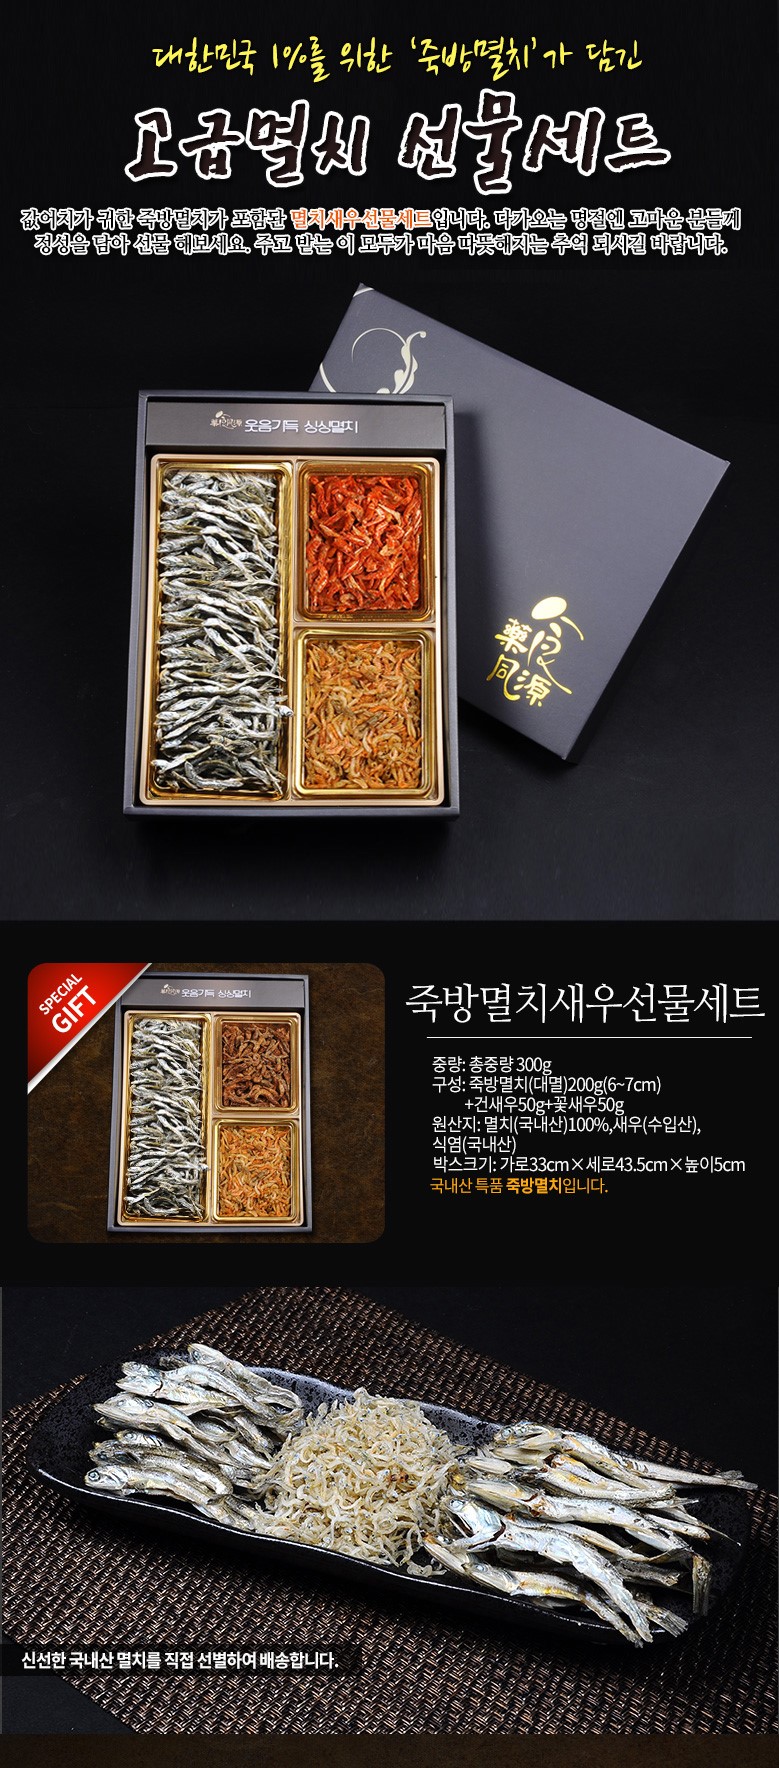 韓國食品-[網店限量發售!] [Nooriwon] 鯷魚蝦米禮盒 300g